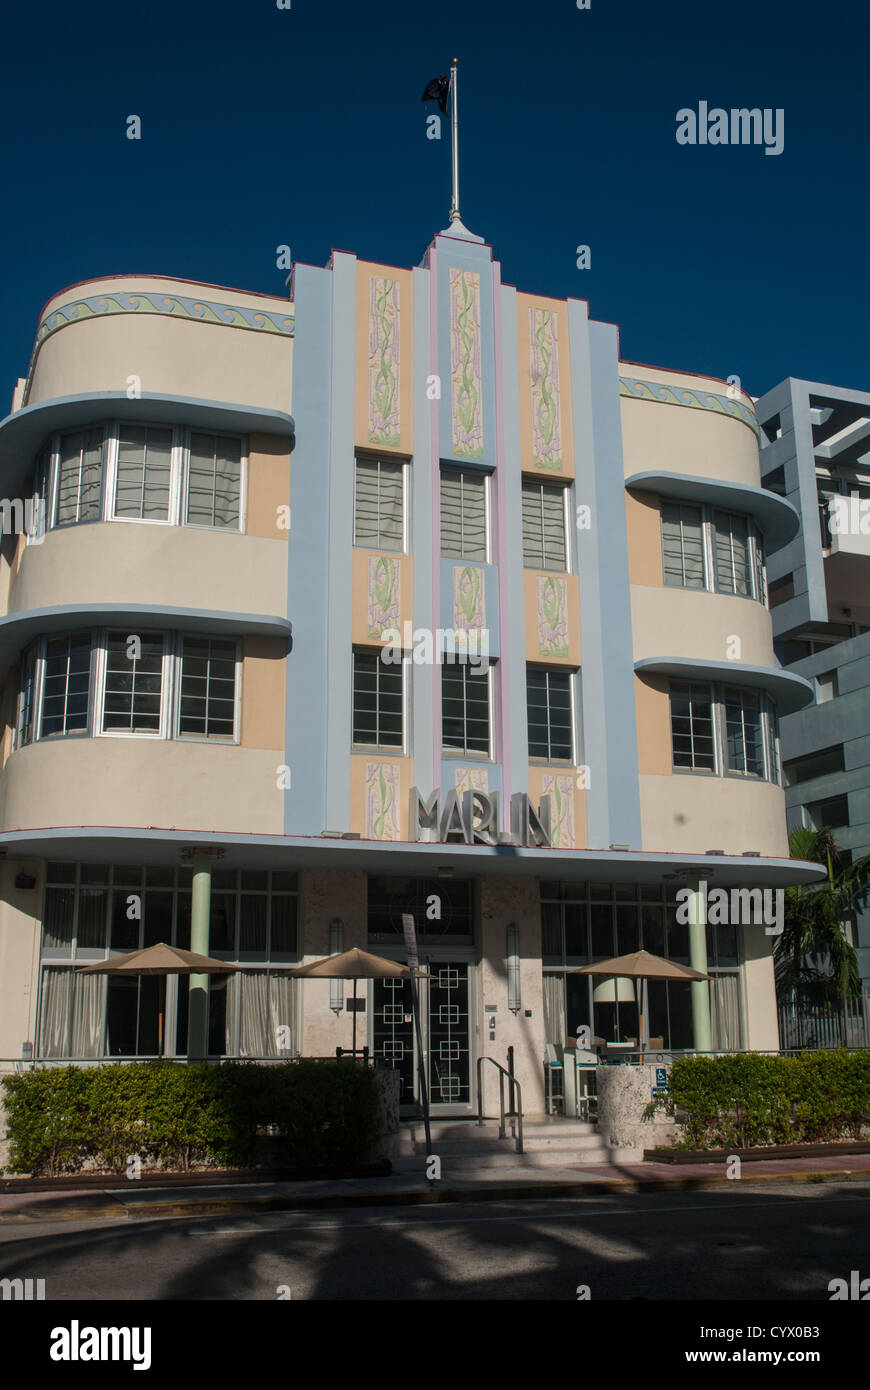 Il Marlin - hotel in stile Art Deco di Miami Beach Foto Stock